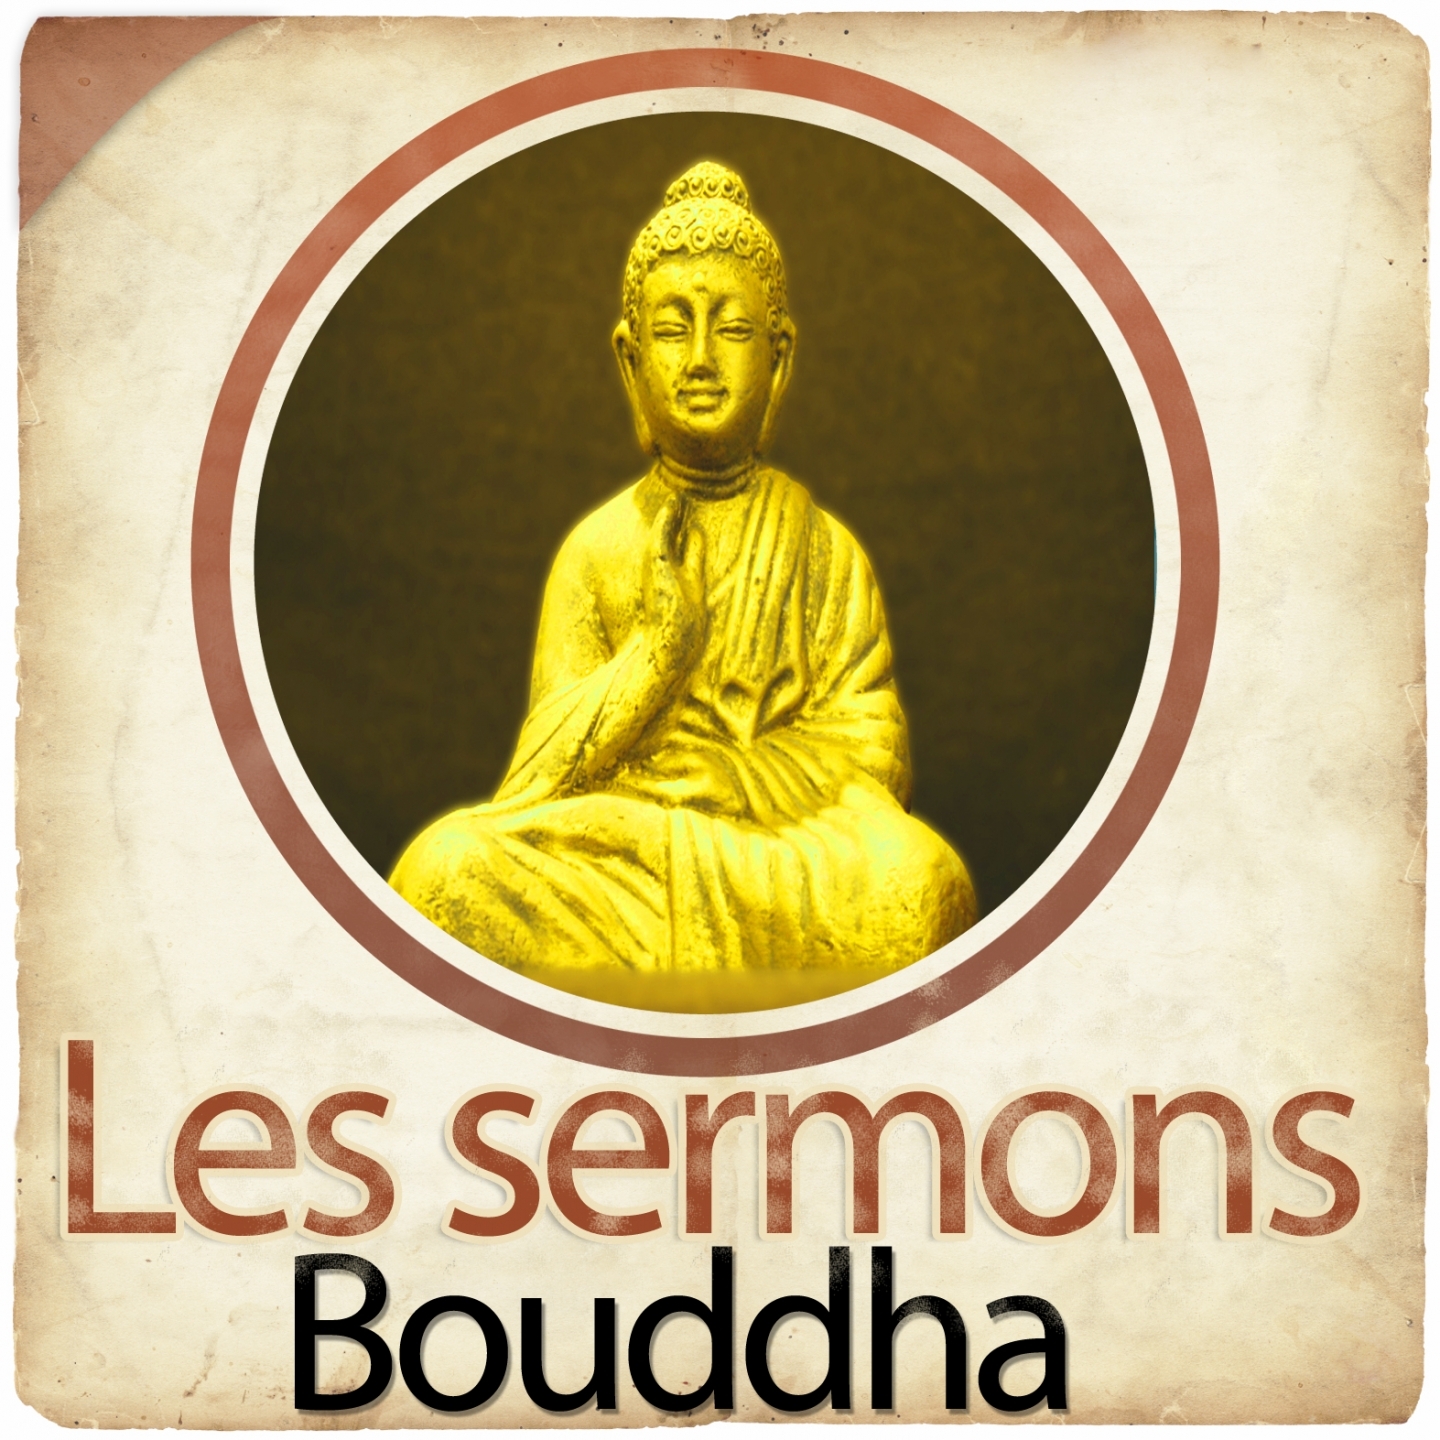 Les sermons de Bouddha, chapitre 4